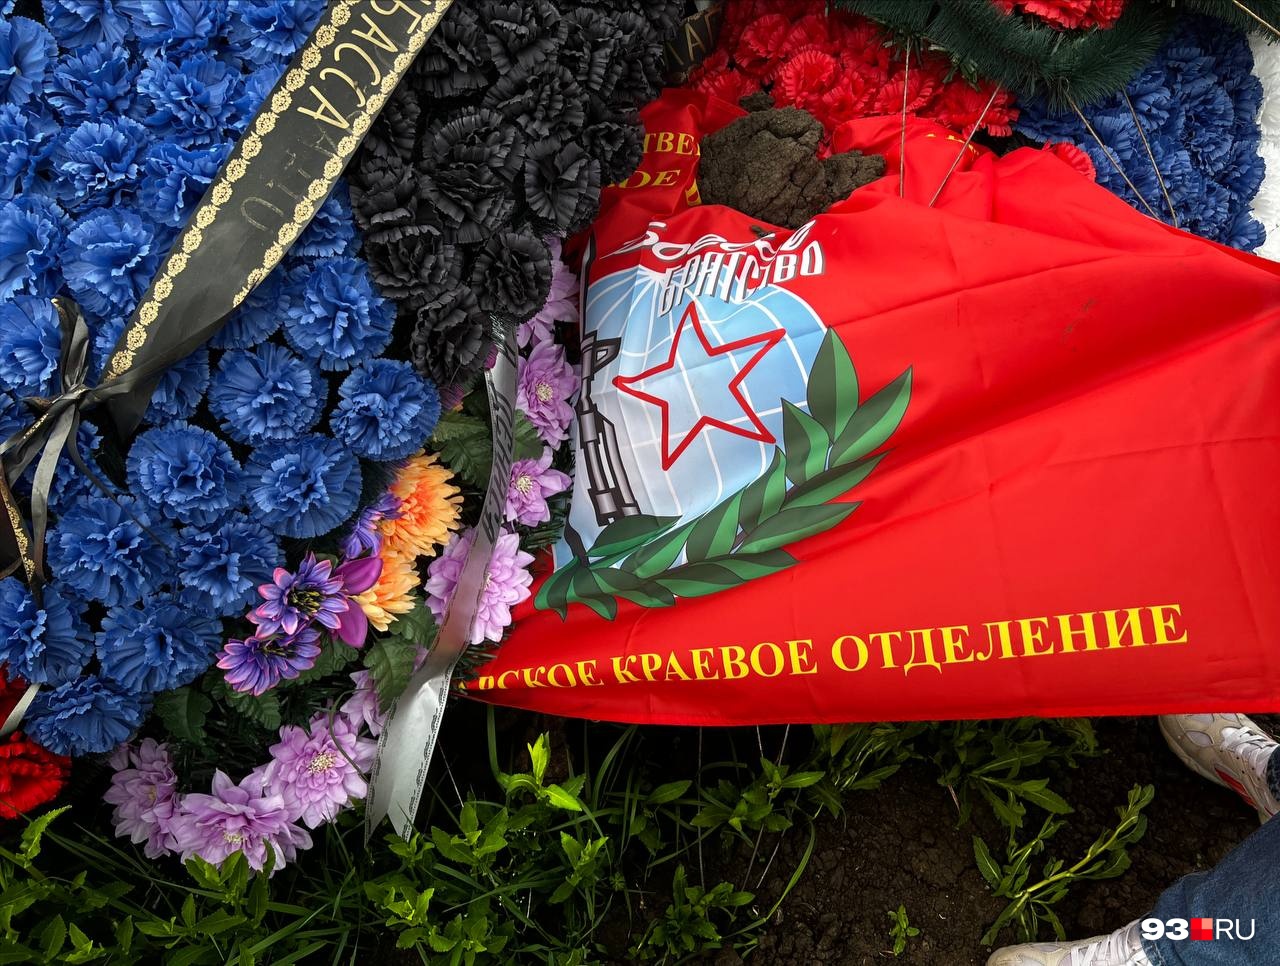 На одной из могил лежит флаг краевого отделения военного братства